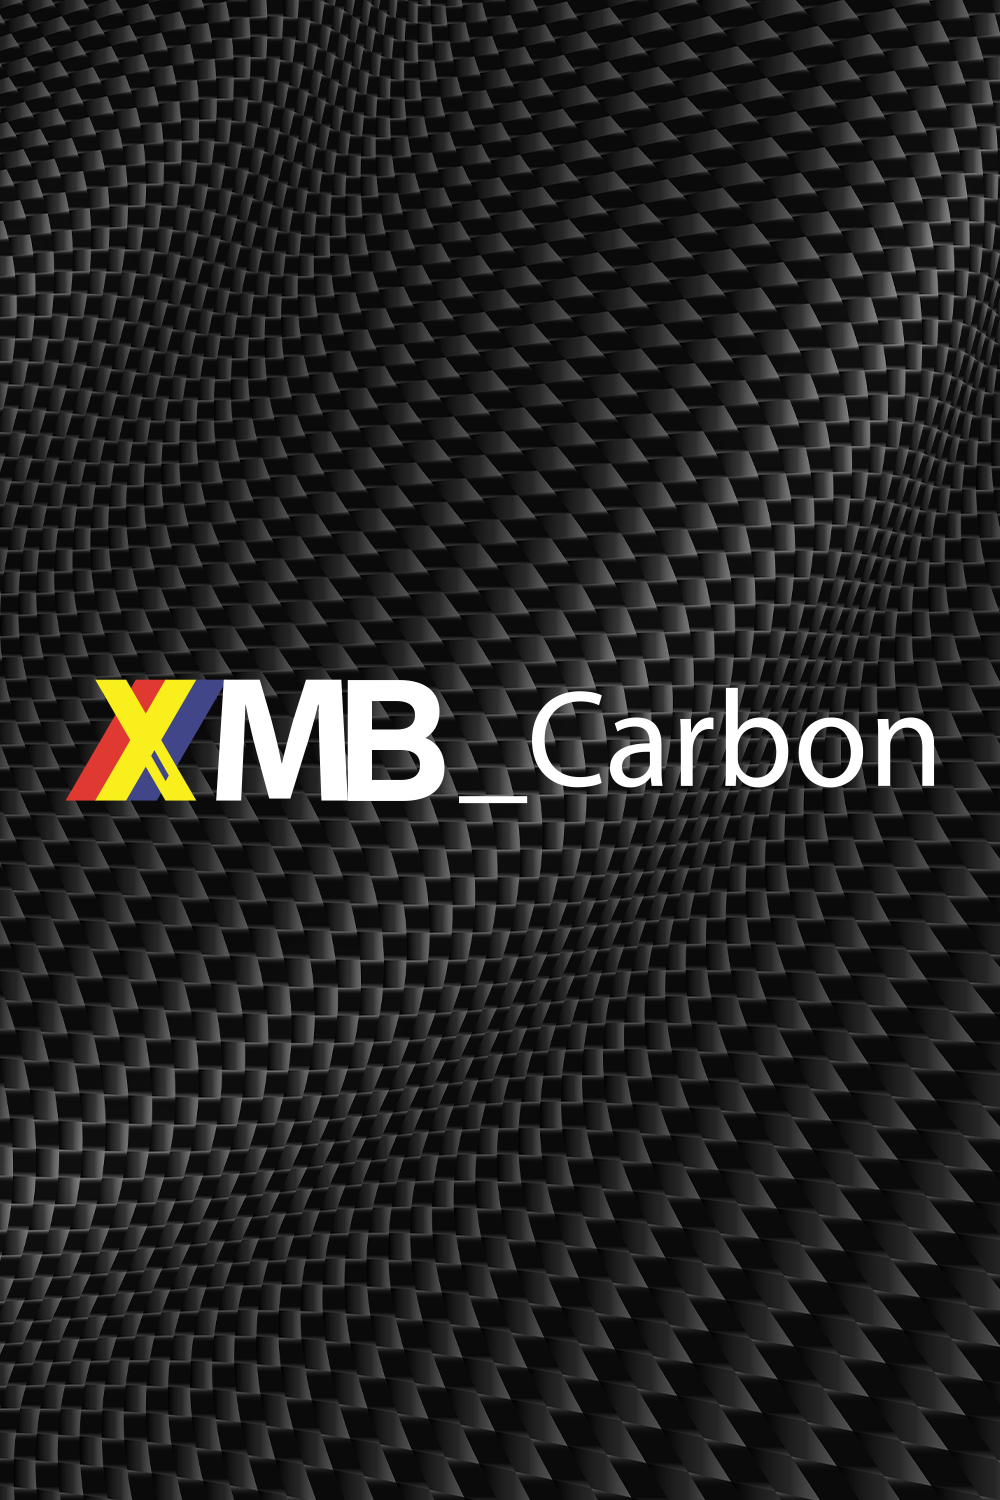 XMB_Carbon - Casting | 10-25lb - 7'